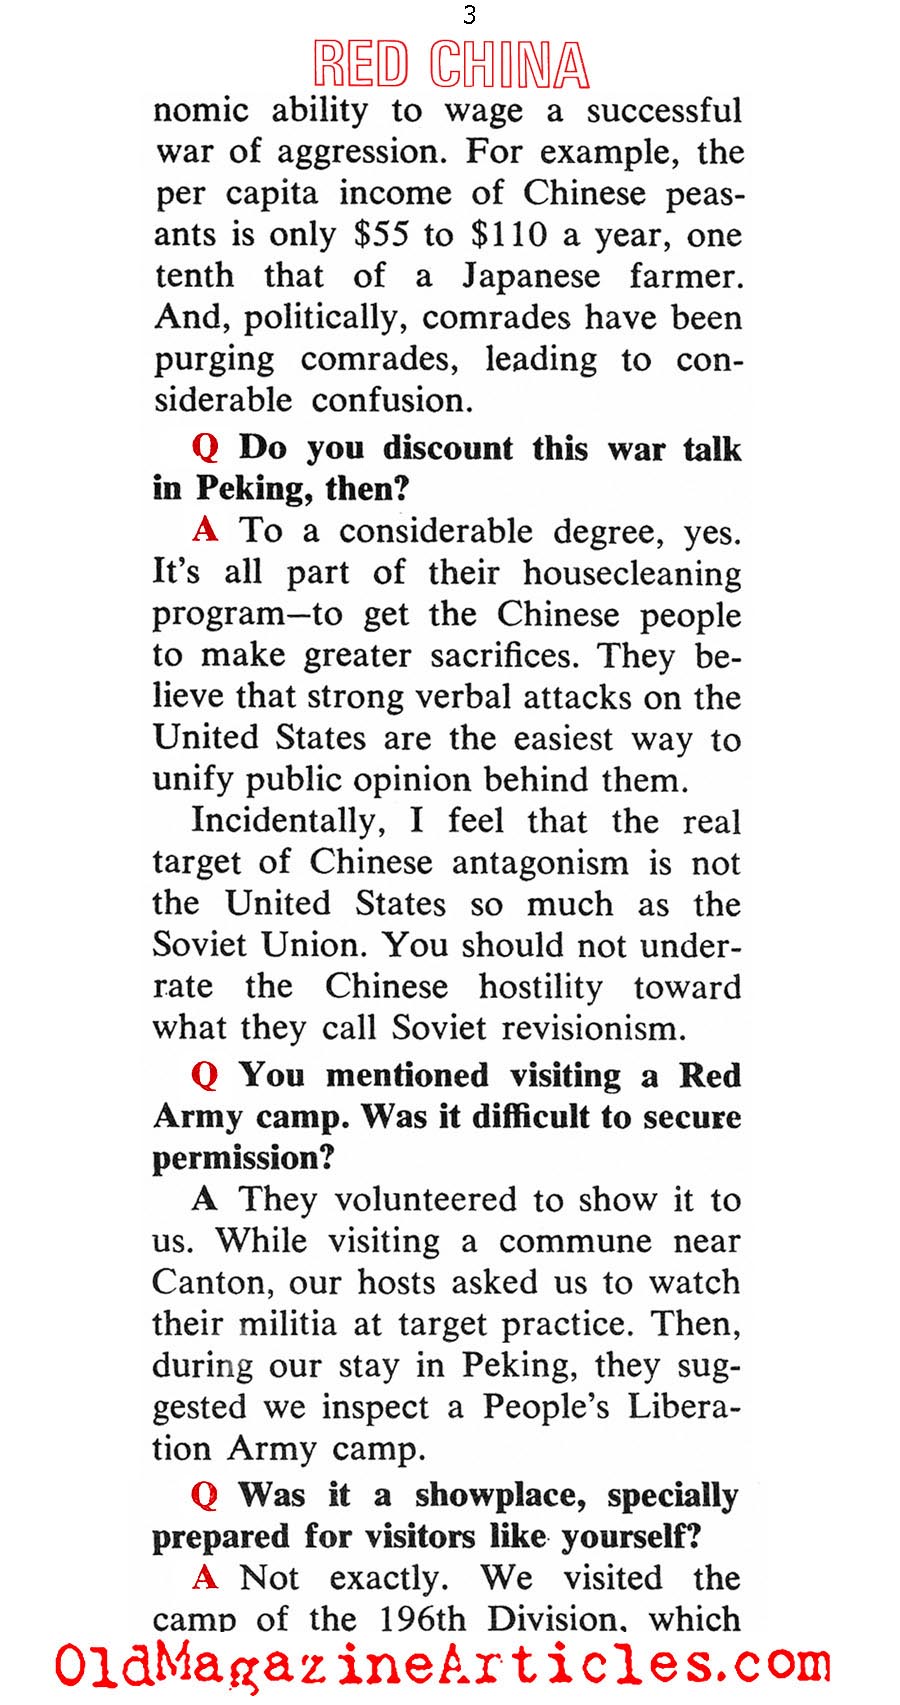 How Dangerous is Red China (Coronet Magazine, 1967)